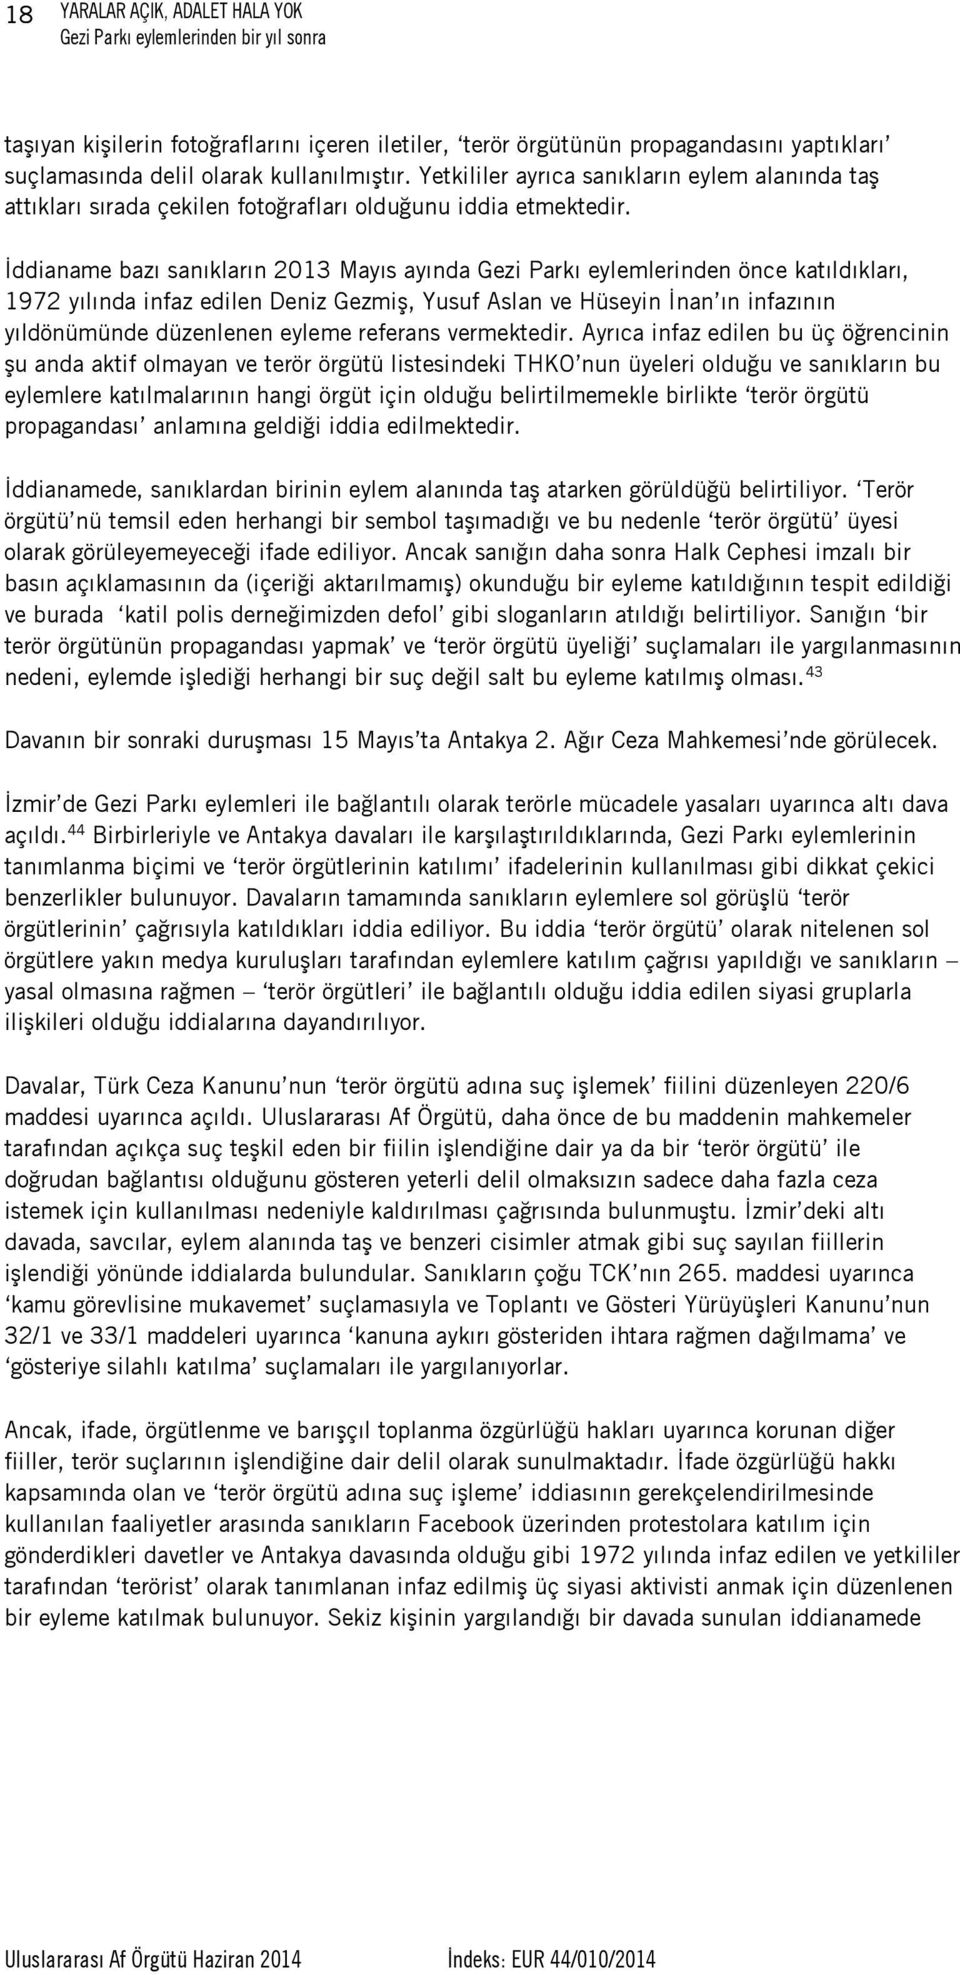 İddianame bazı sanıkların 2013 Mayıs ayında Gezi Parkı eylemlerinden önce katıldıkları, 1972 yılında infaz edilen Deniz Gezmiş, Yusuf Aslan ve Hüseyin İnan ın infazının yıldönümünde düzenlenen eyleme